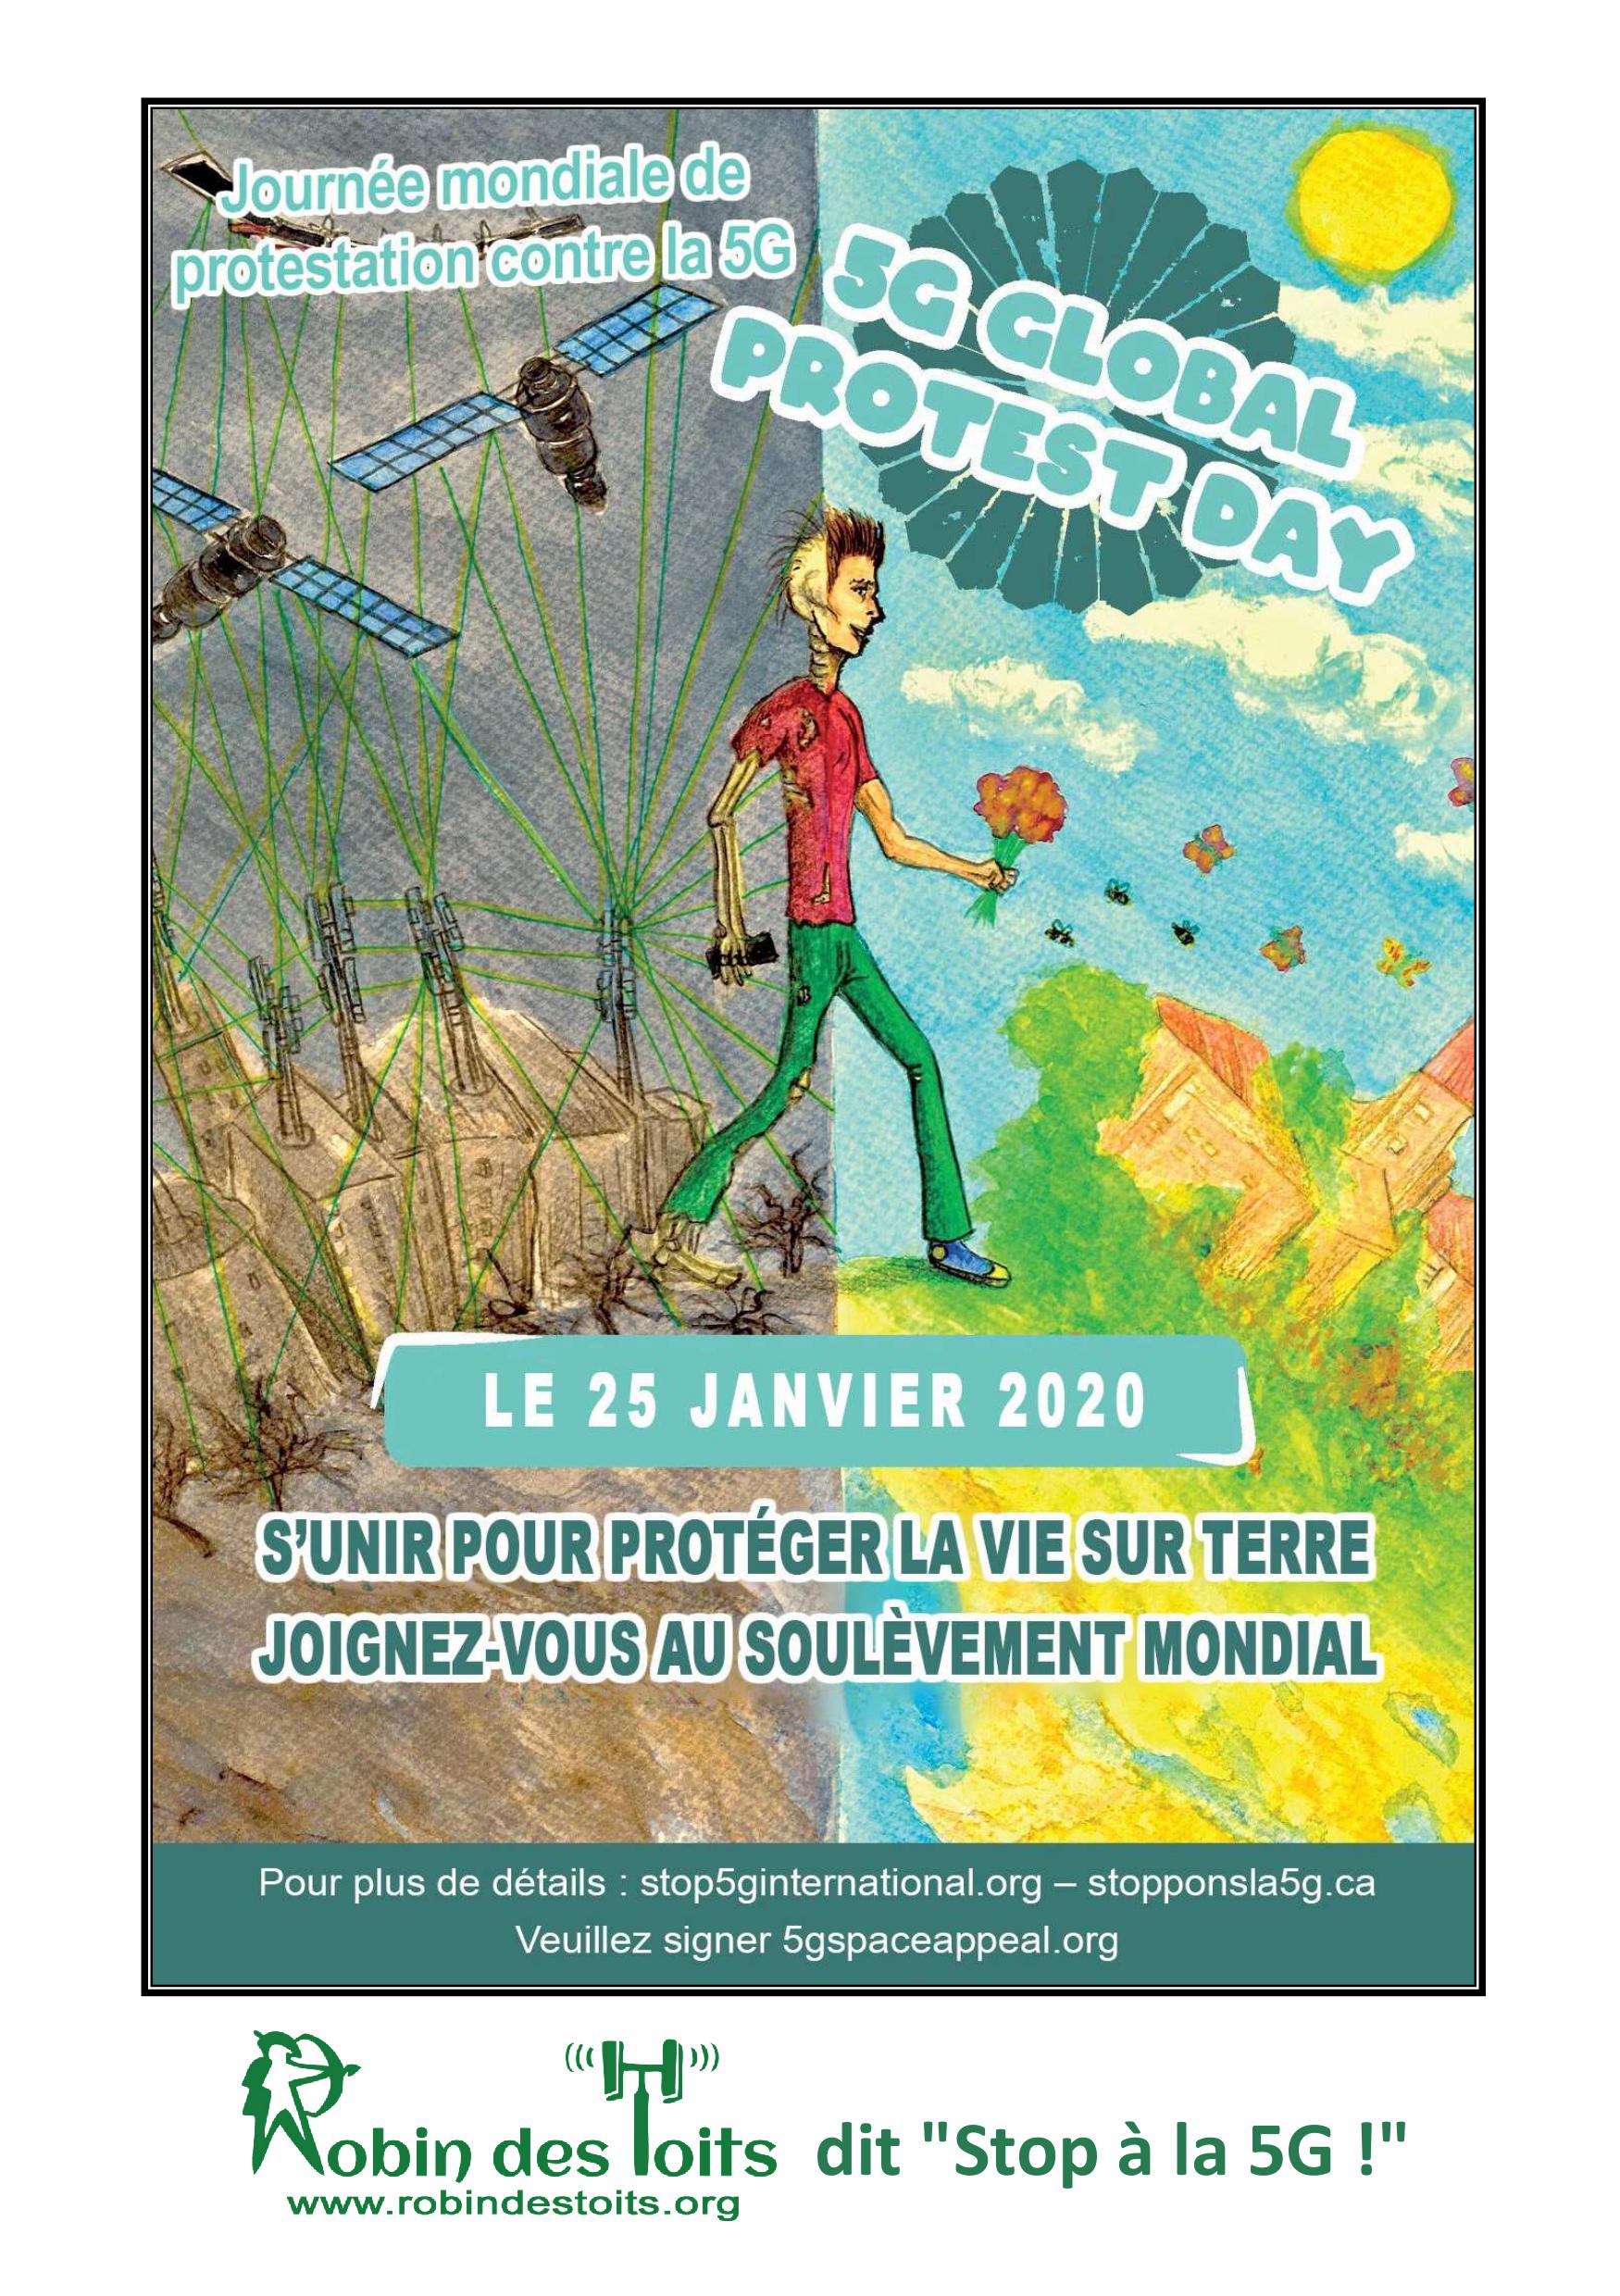 25 janvier 2020 : JOURNEE MONDIALE DE PROTESTATION CONTRE LA 5G A PARIS